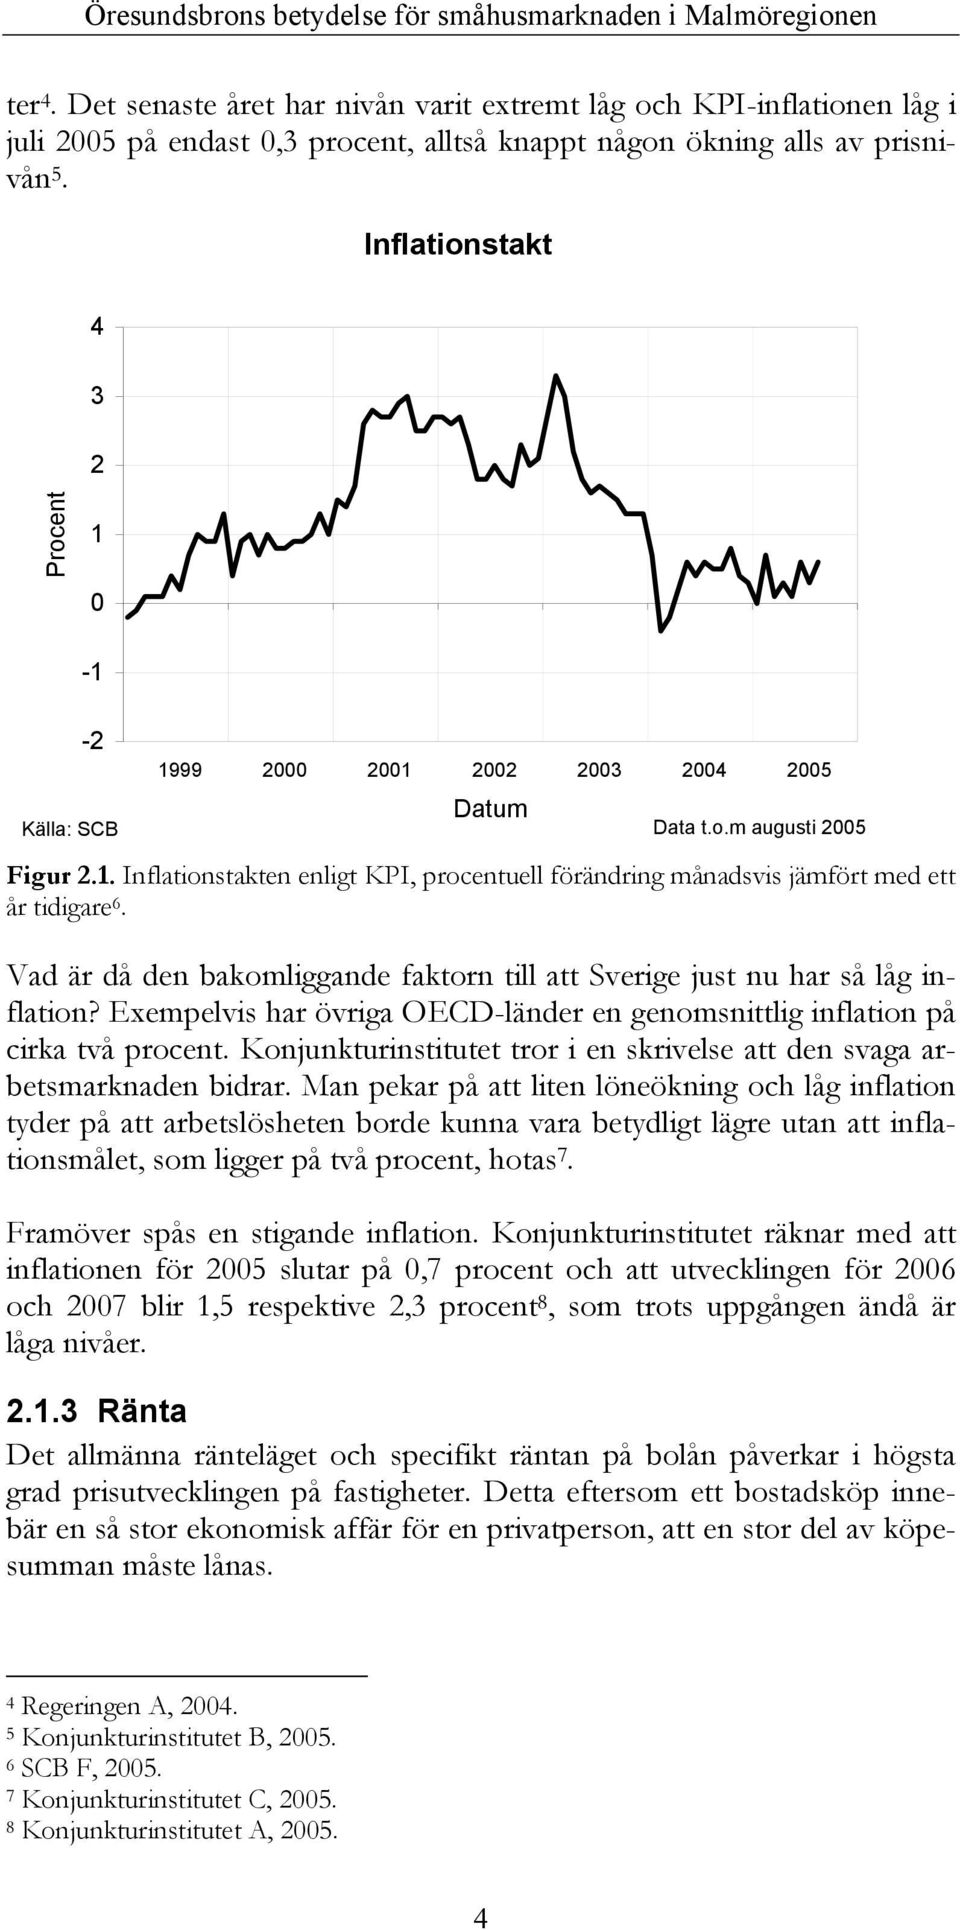 Vad är då den bakomliggande faktorn till att Sverige just nu har så låg inflation? Exempelvis har övriga OECD-länder en genomsnittlig inflation på cirka två procent.